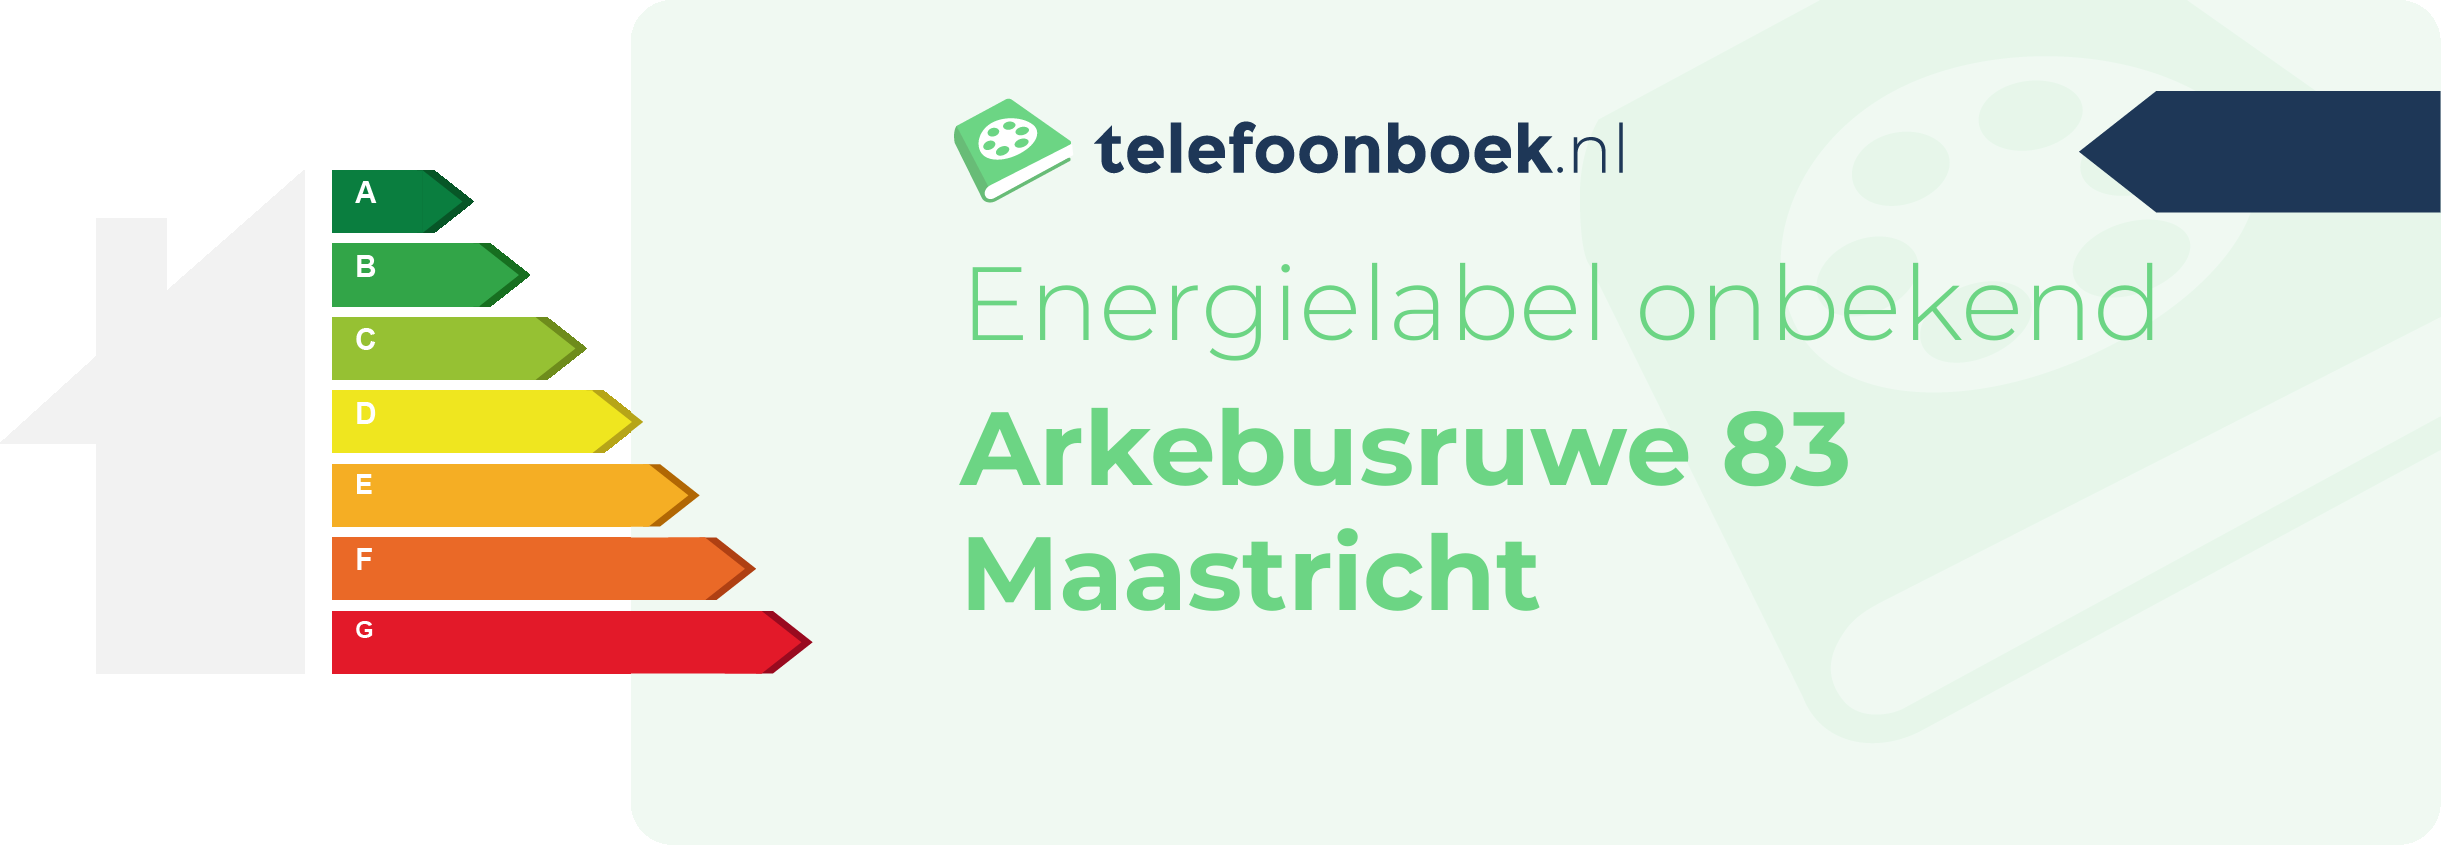 Energielabel Arkebusruwe 83 Maastricht